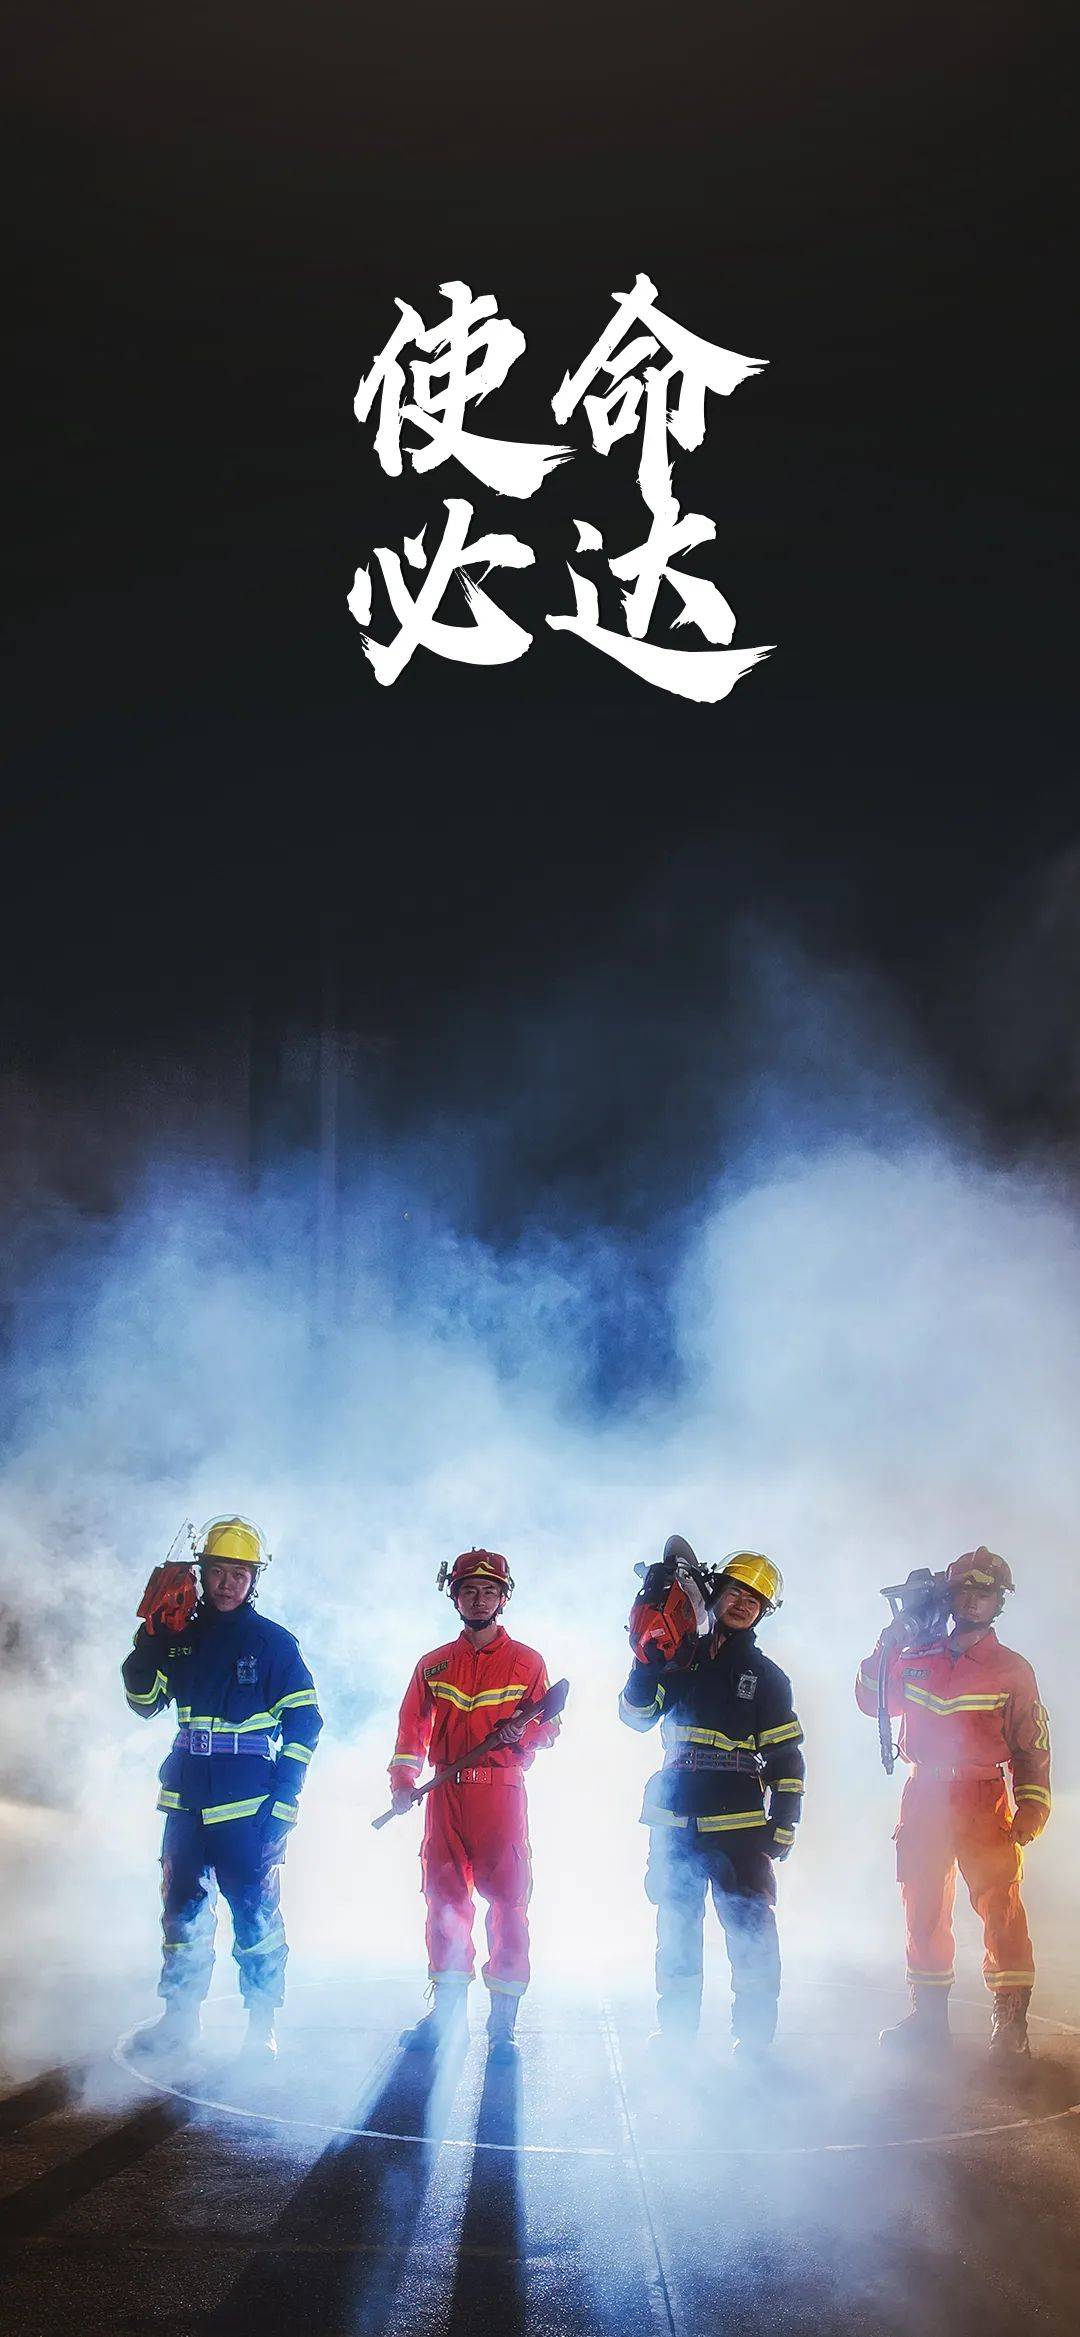 中国消防手机壁纸竖屏图片